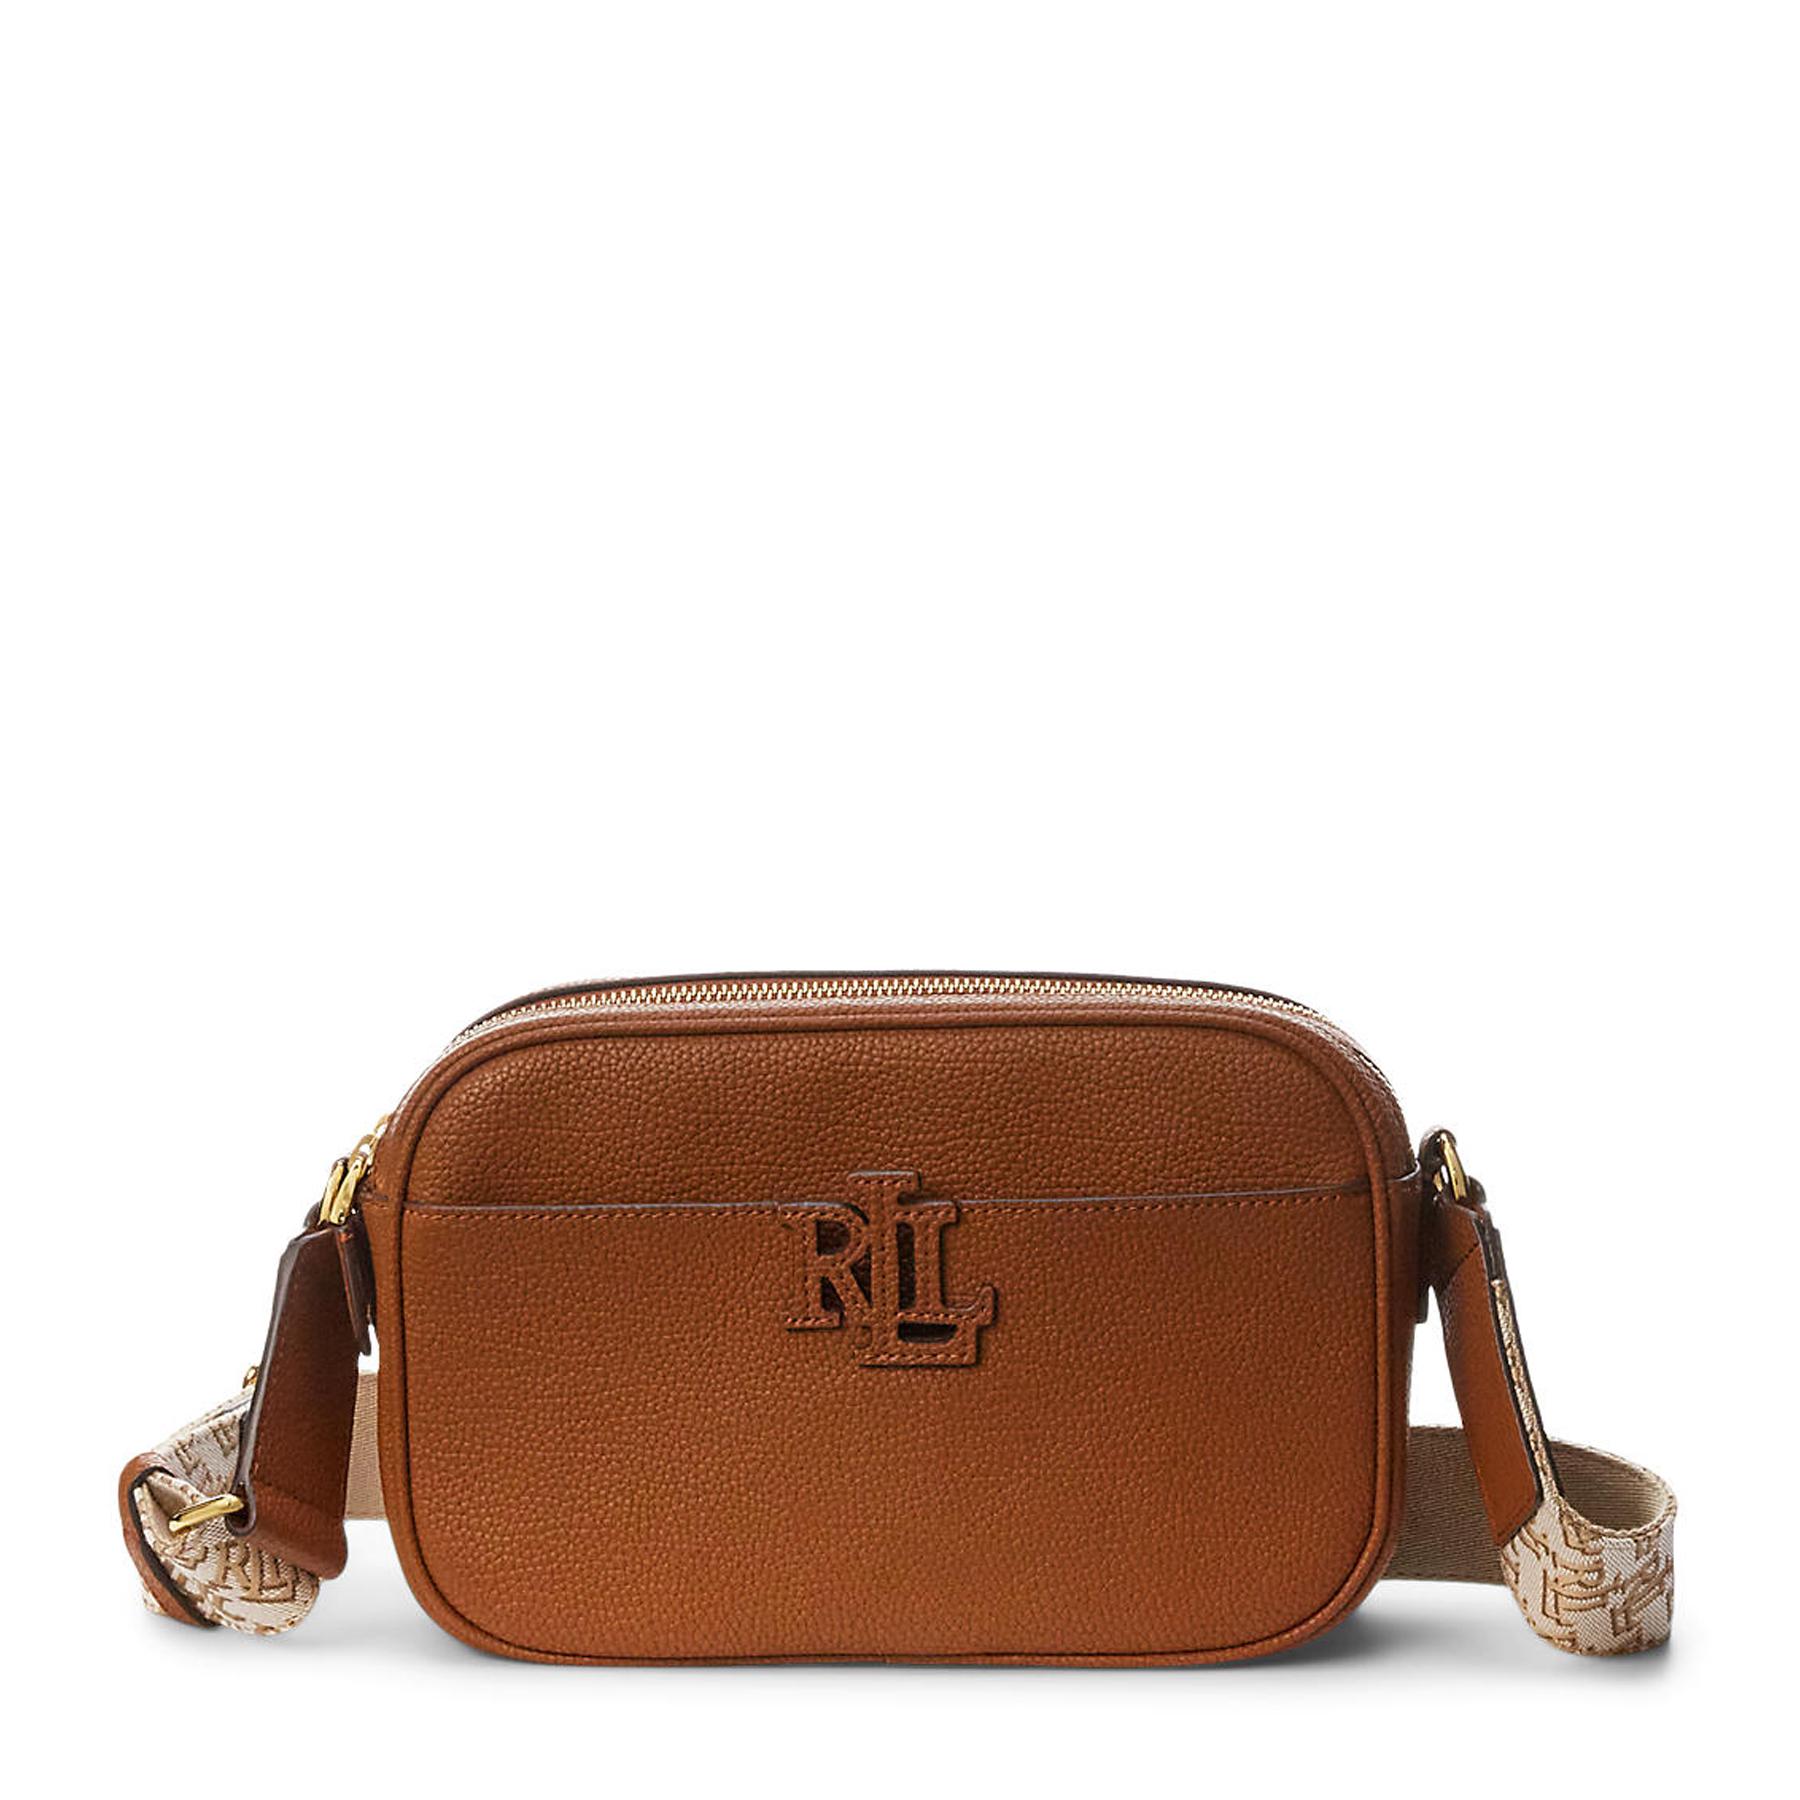 Lauren by Ralph Lauren Pebbled Leather Carrie Crossbody Handbag in Brown |  Lyst